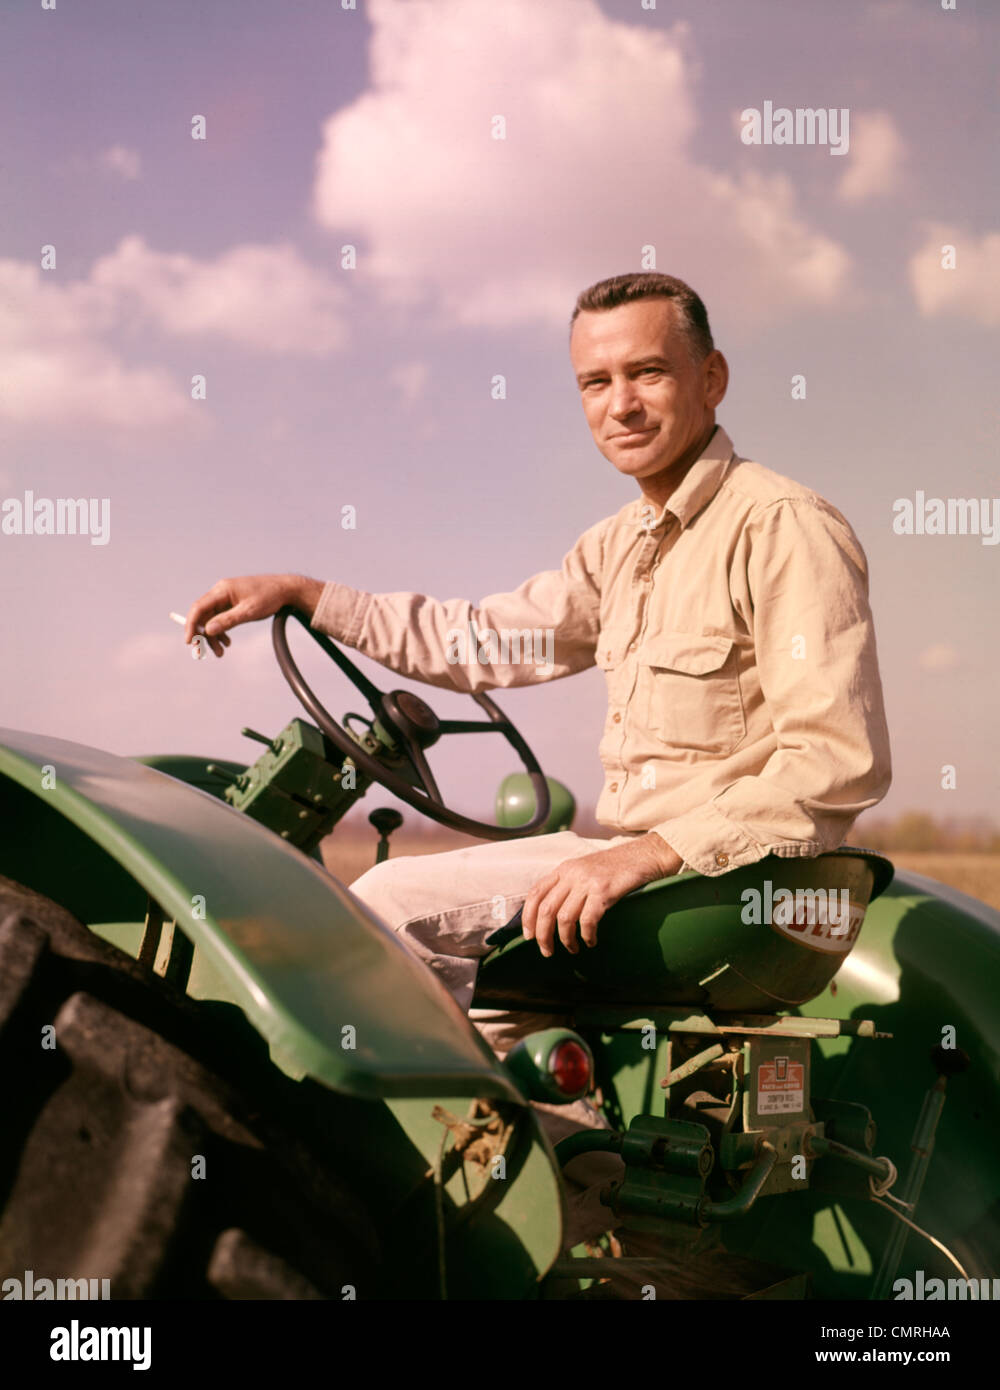 1960 PORTRAIT SMILING FARMER SITTING ON CIGARETTE TRACTEUR VERT Banque D'Images